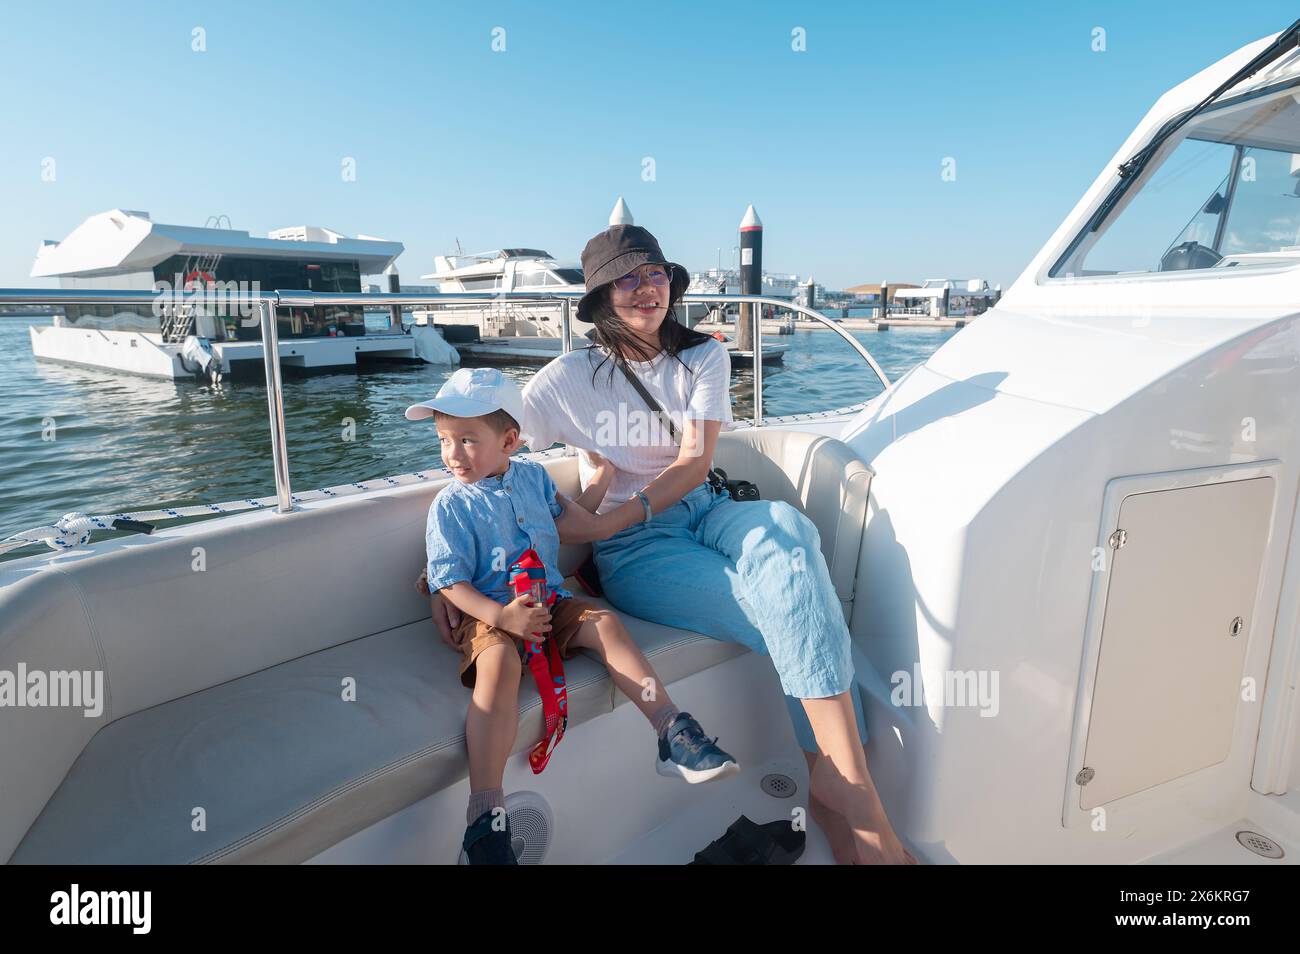 Ein kleiner Junge macht eine Bootsfahrt mit seiner Mutter am Al Bandar Marina in der Nähe von Yas Island, mit der Skyline von Abu Dhabi im Hintergrund könnte es sich um ein Asien handeln Stockfoto